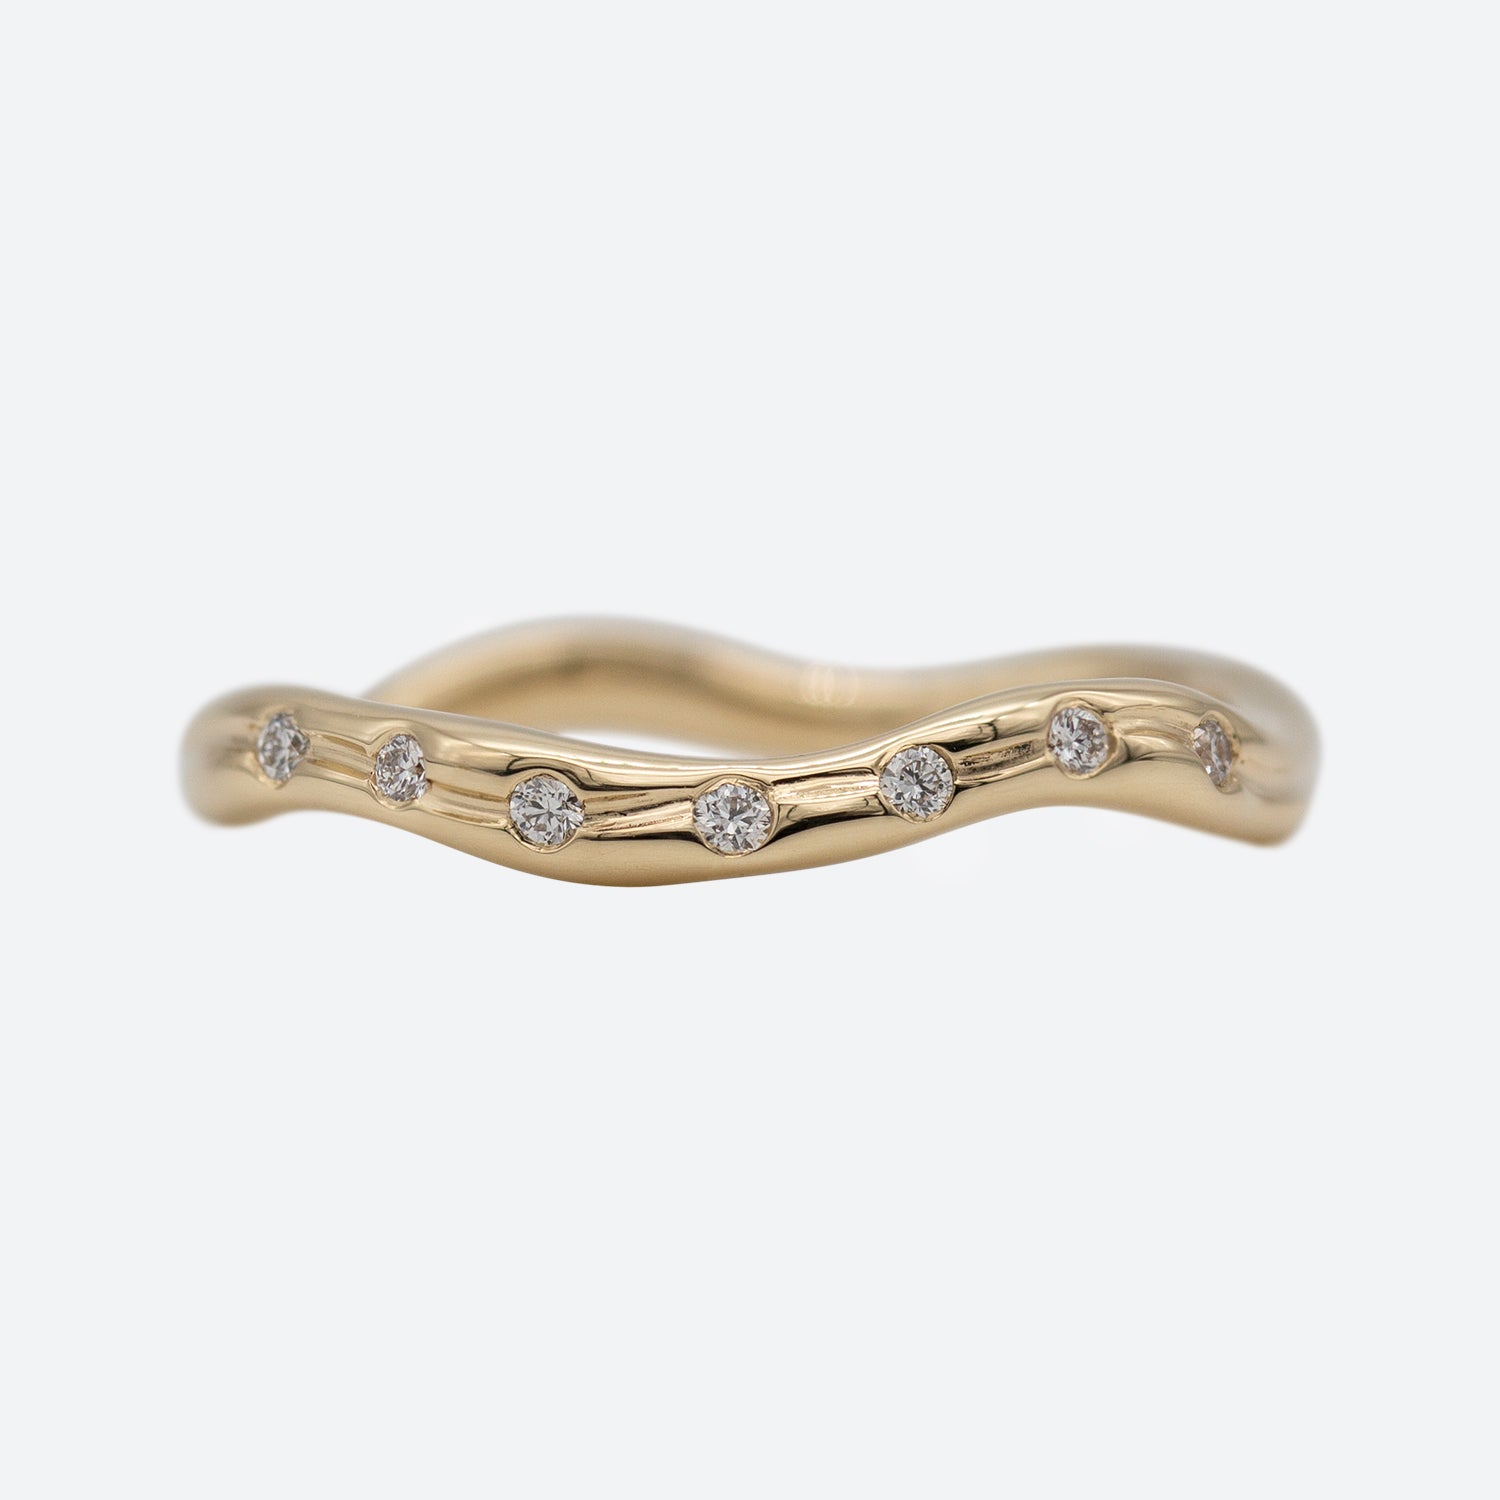 En ring i guld set forfra med syv diamanter på hvid baggrund. Ringen er formgivet organisk og bølger elegant. 